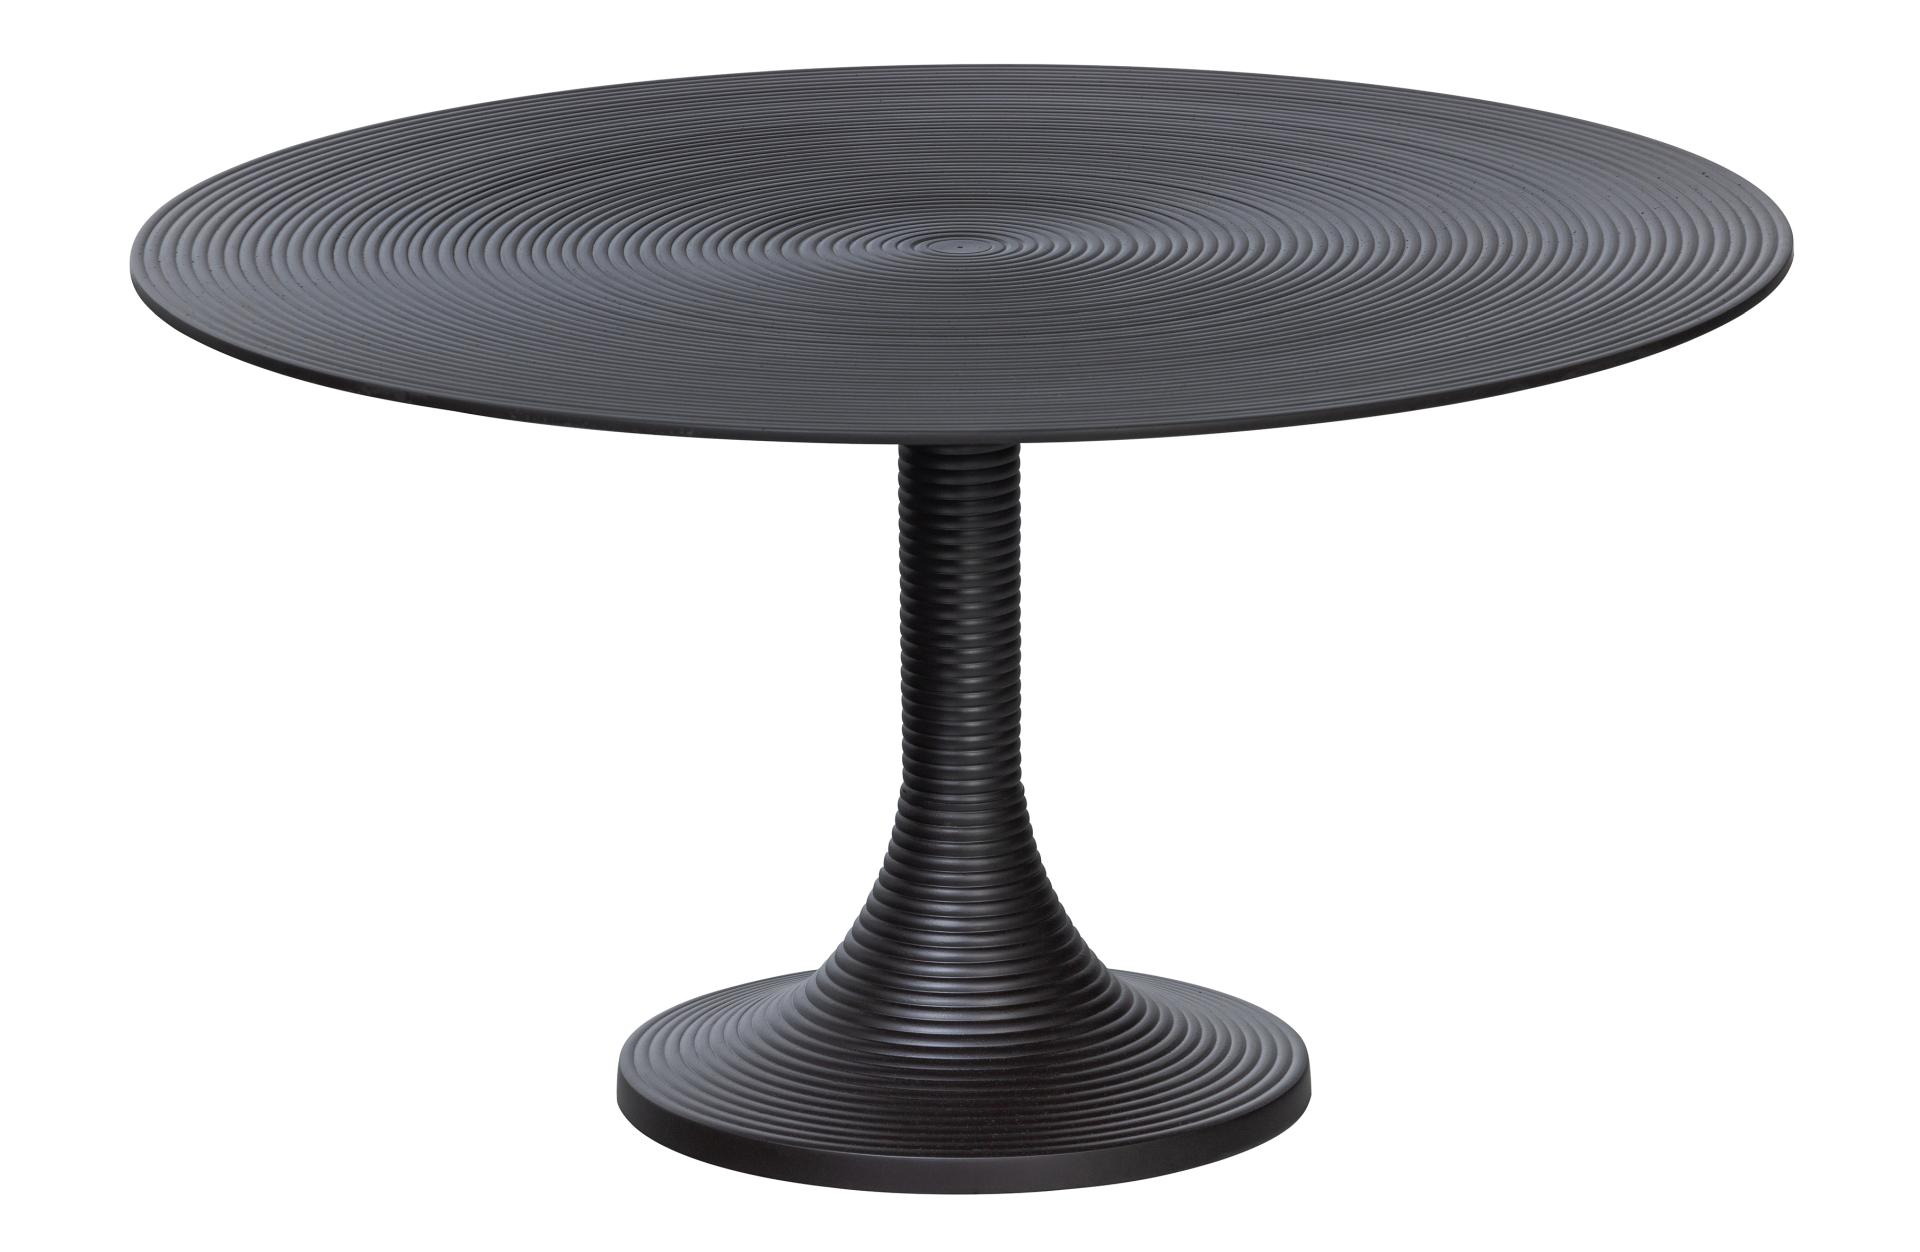 Der Couchtisch Nano wurde aus Aluminium gefertigt. Die Besonderheit des Tisches ist seine Oberfläche. Der Couchtisch ist rund und in einem schwarzem Farbton.